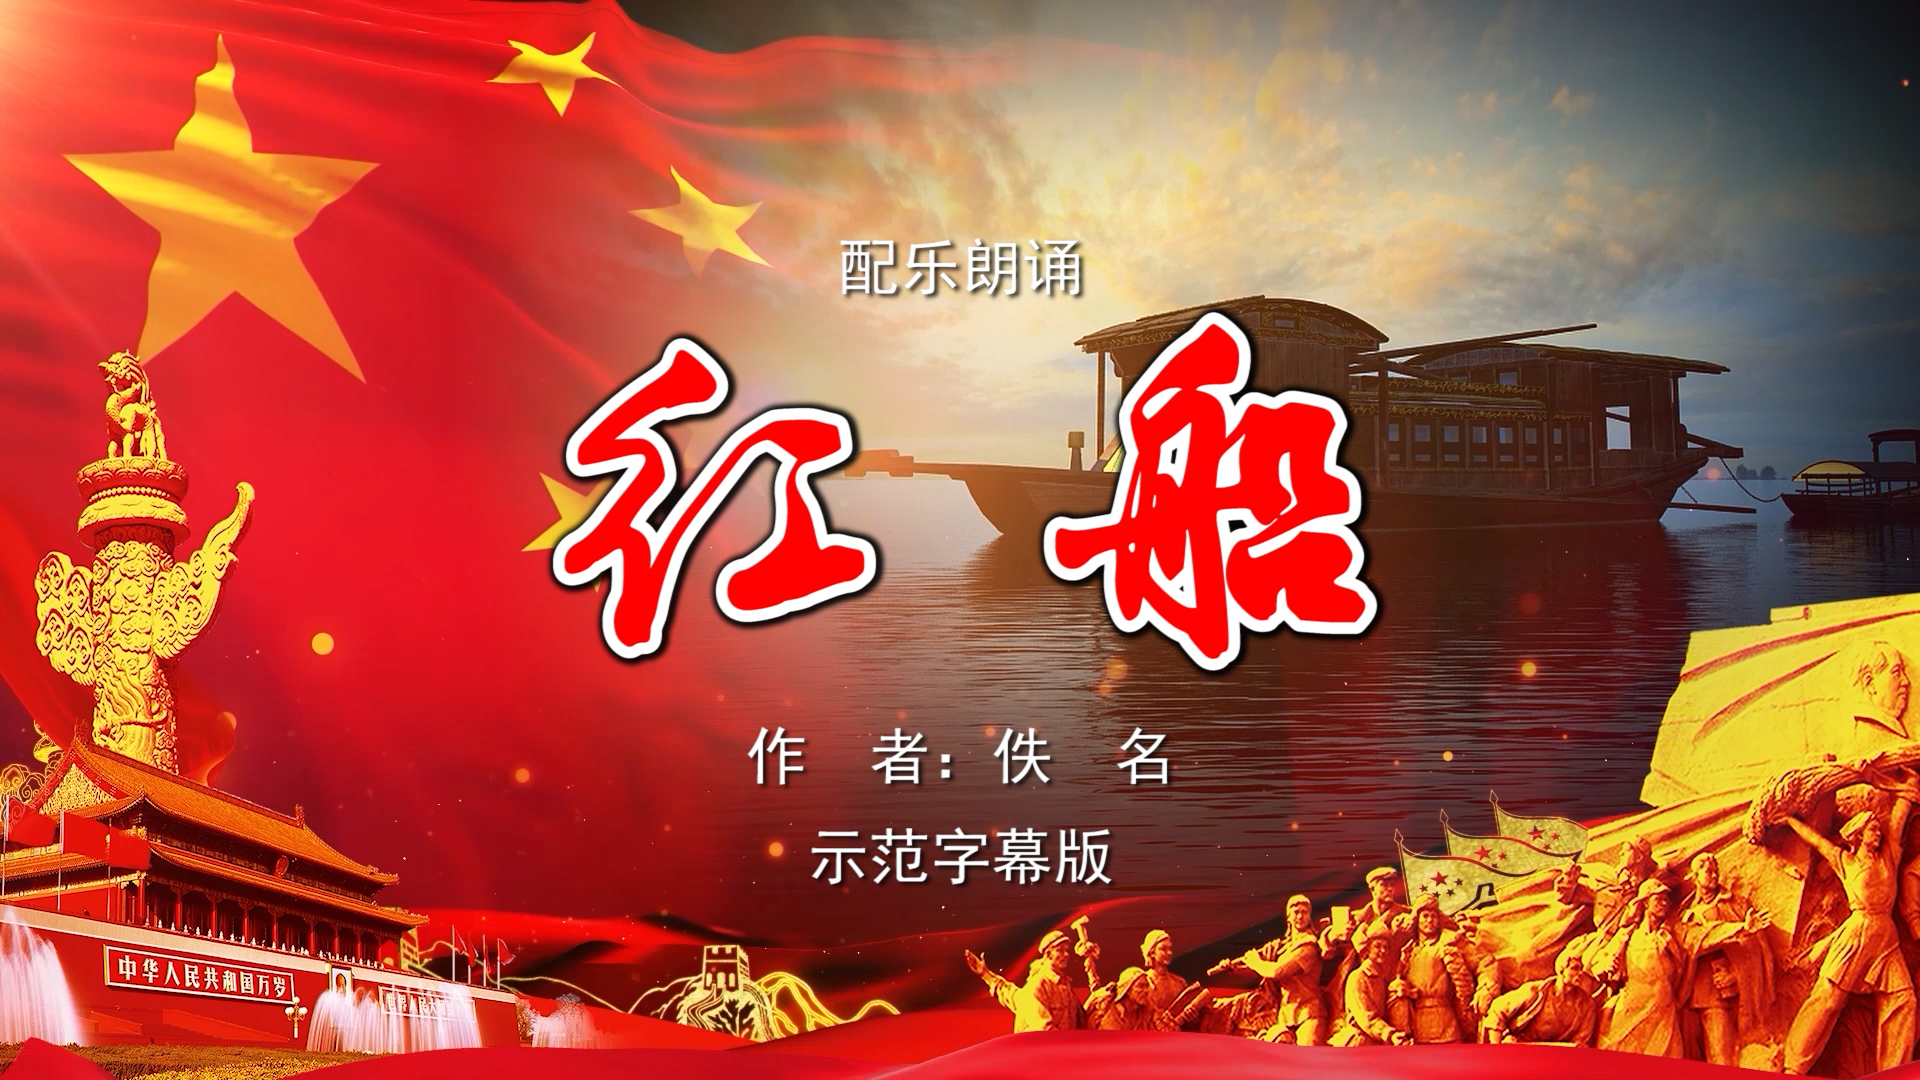 红船 共产党宣言陈望道吃粽子蘸墨的故事诗歌朗